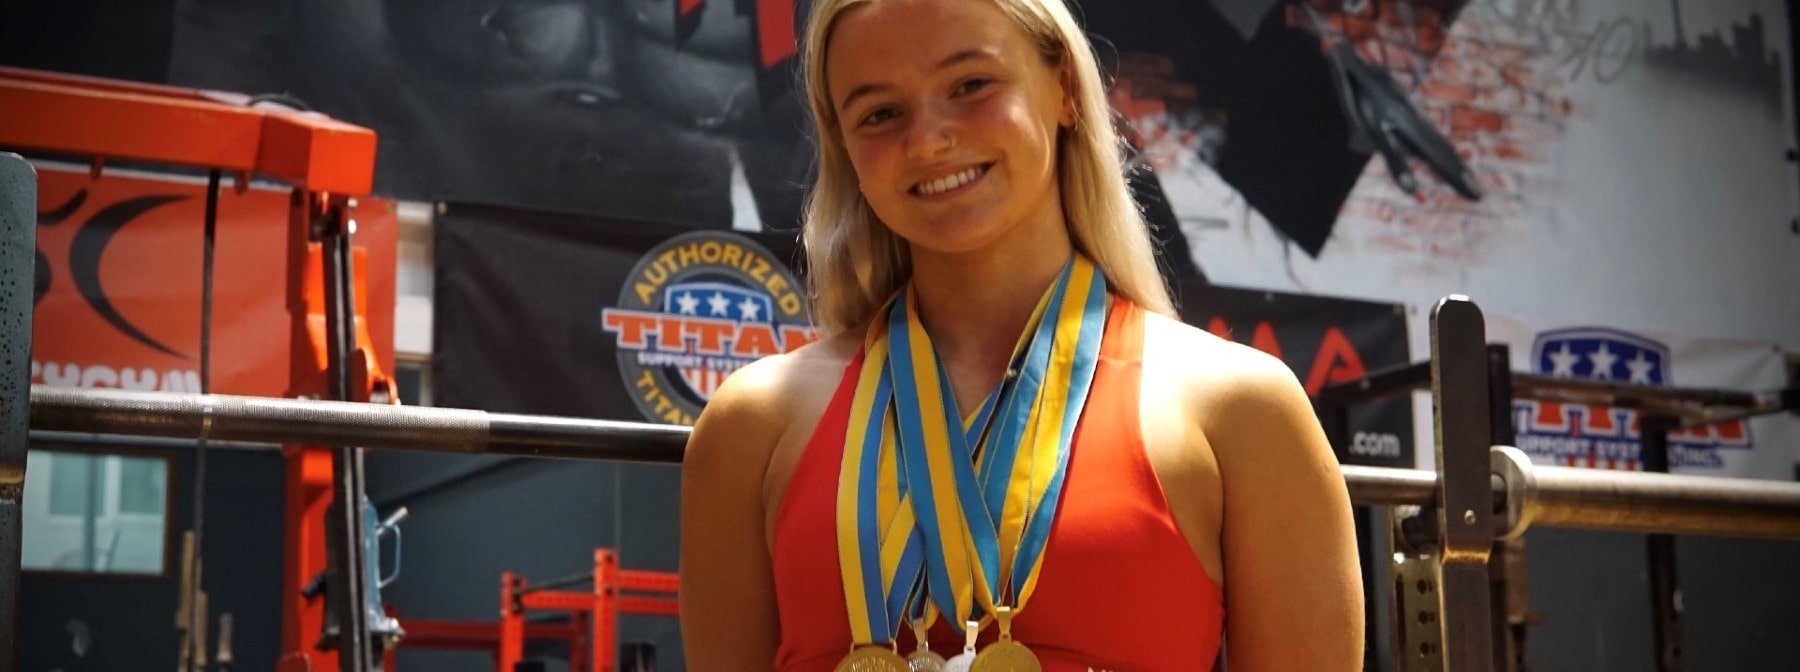 Světová junior šampionka v powerliftingu v 18 letech Laoise Quinn